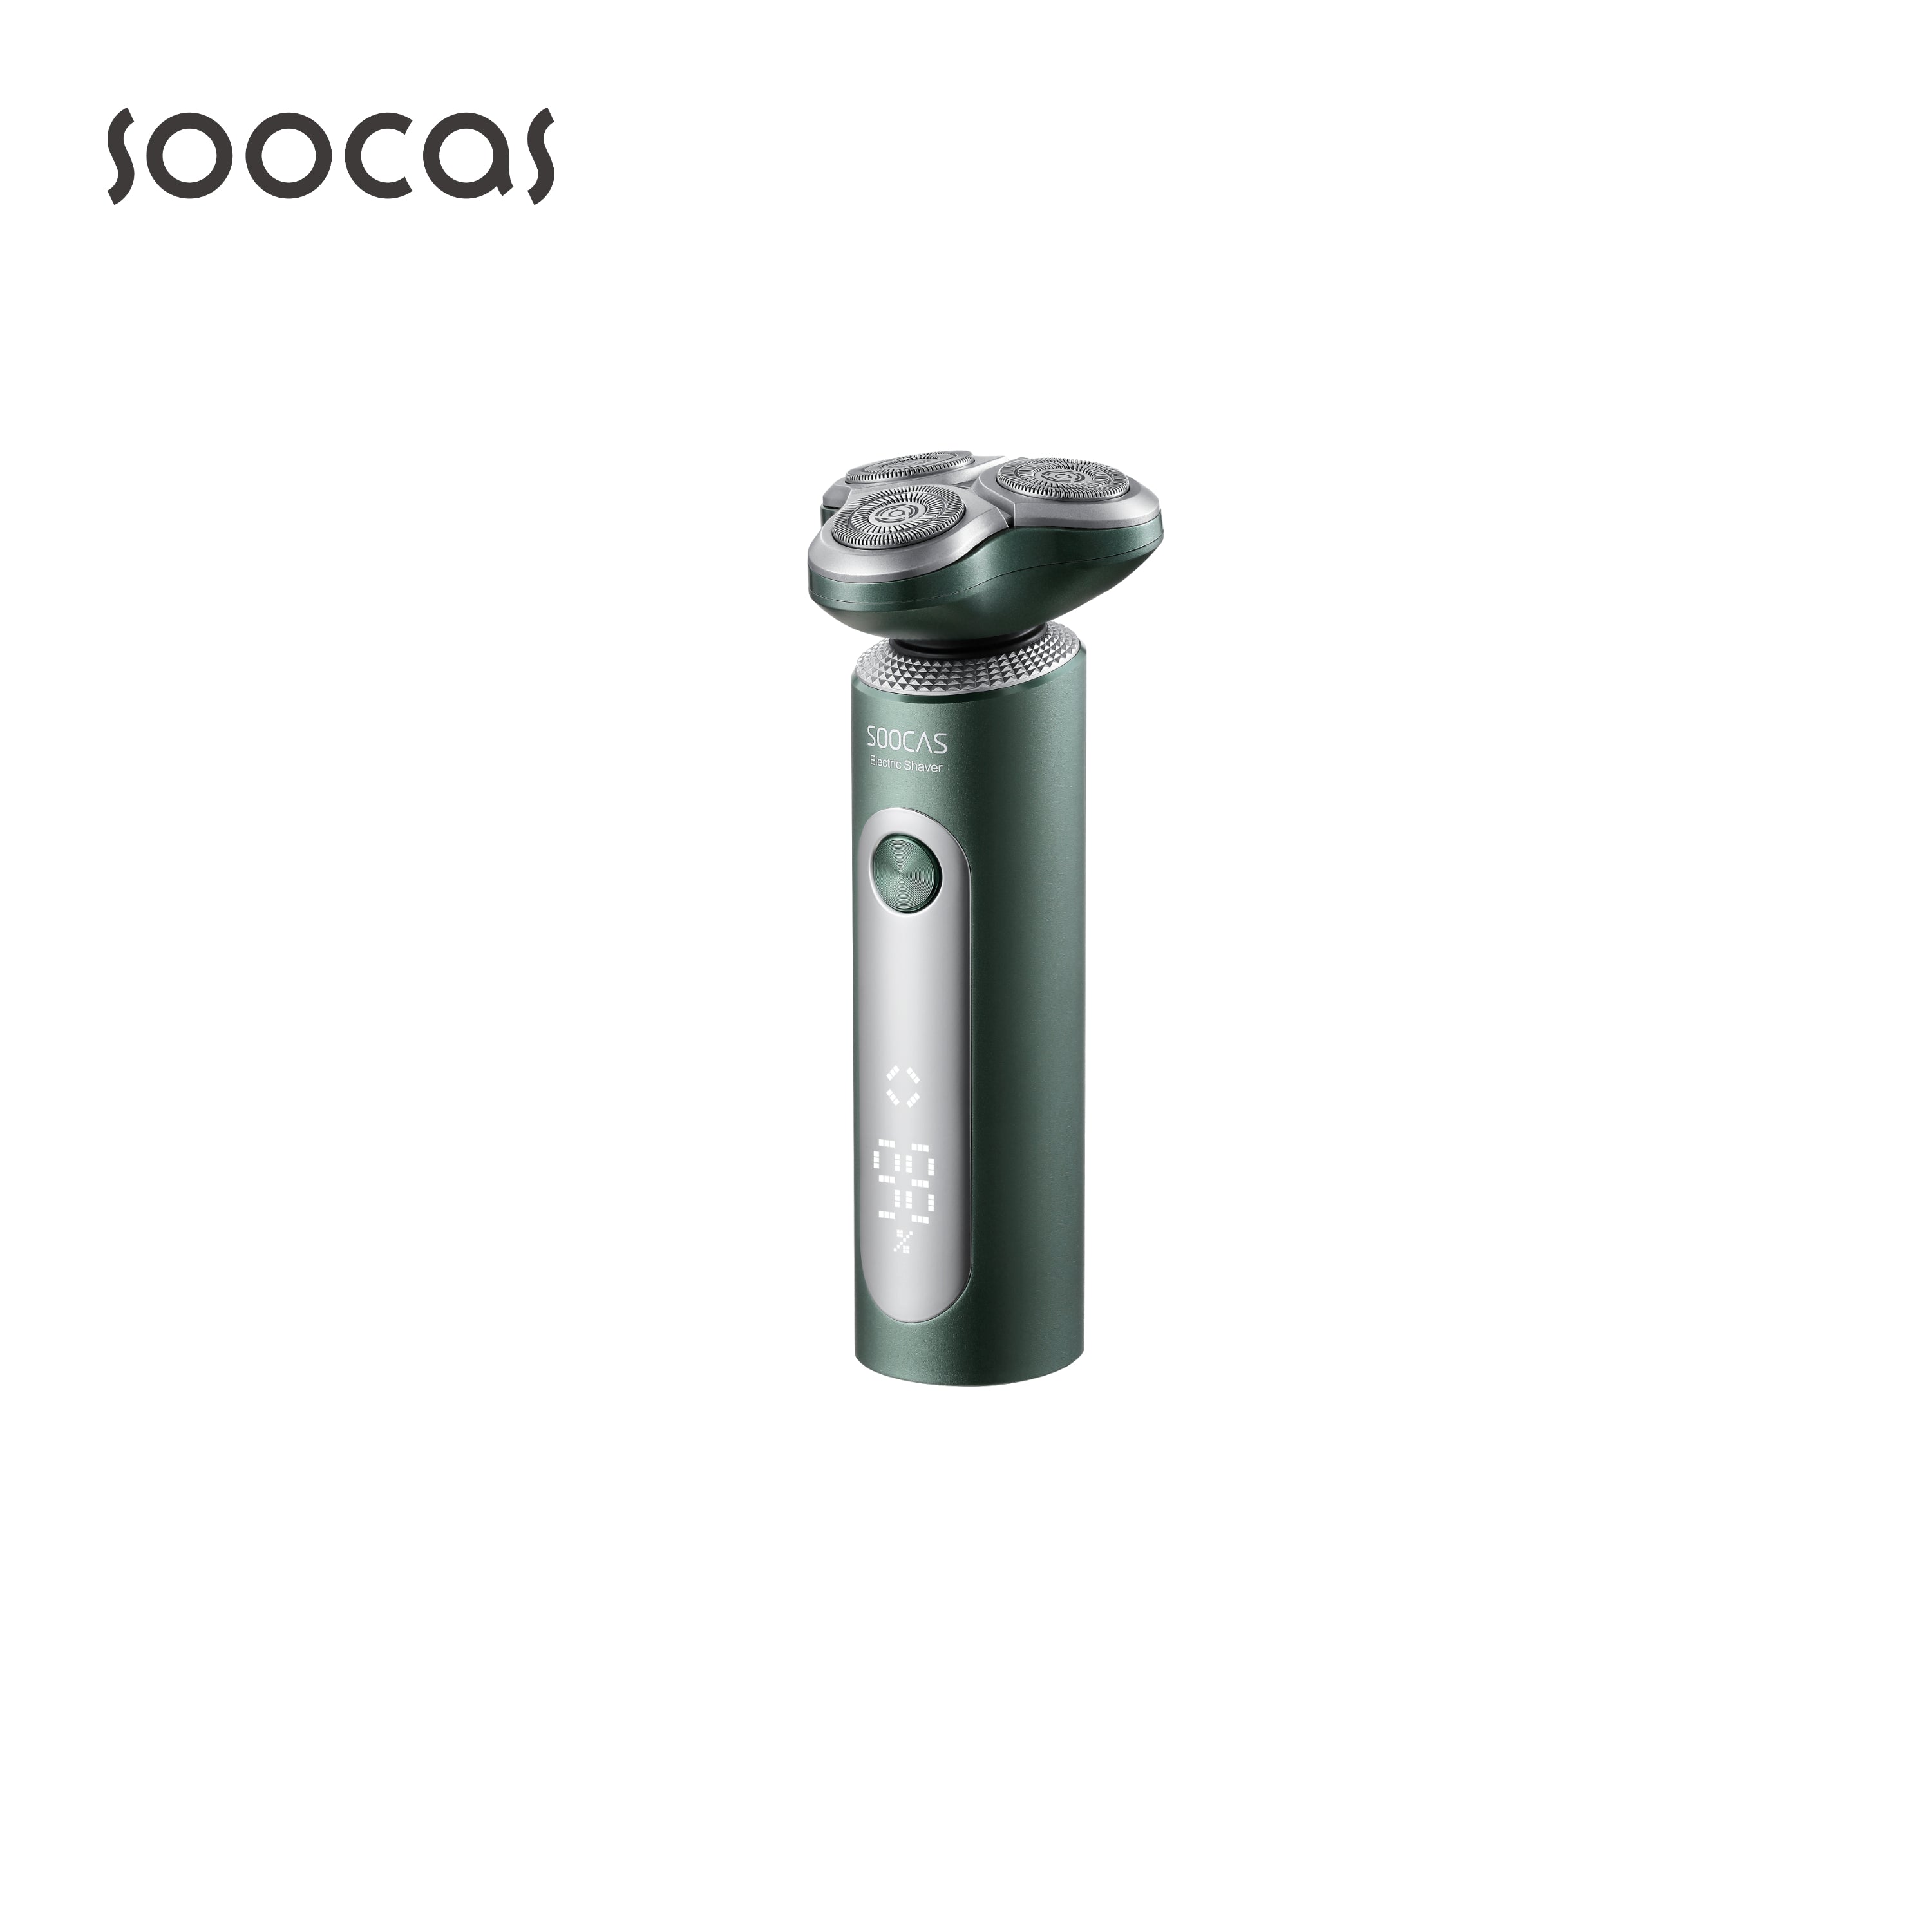 SOOCAS S5 Multi-function Shaver